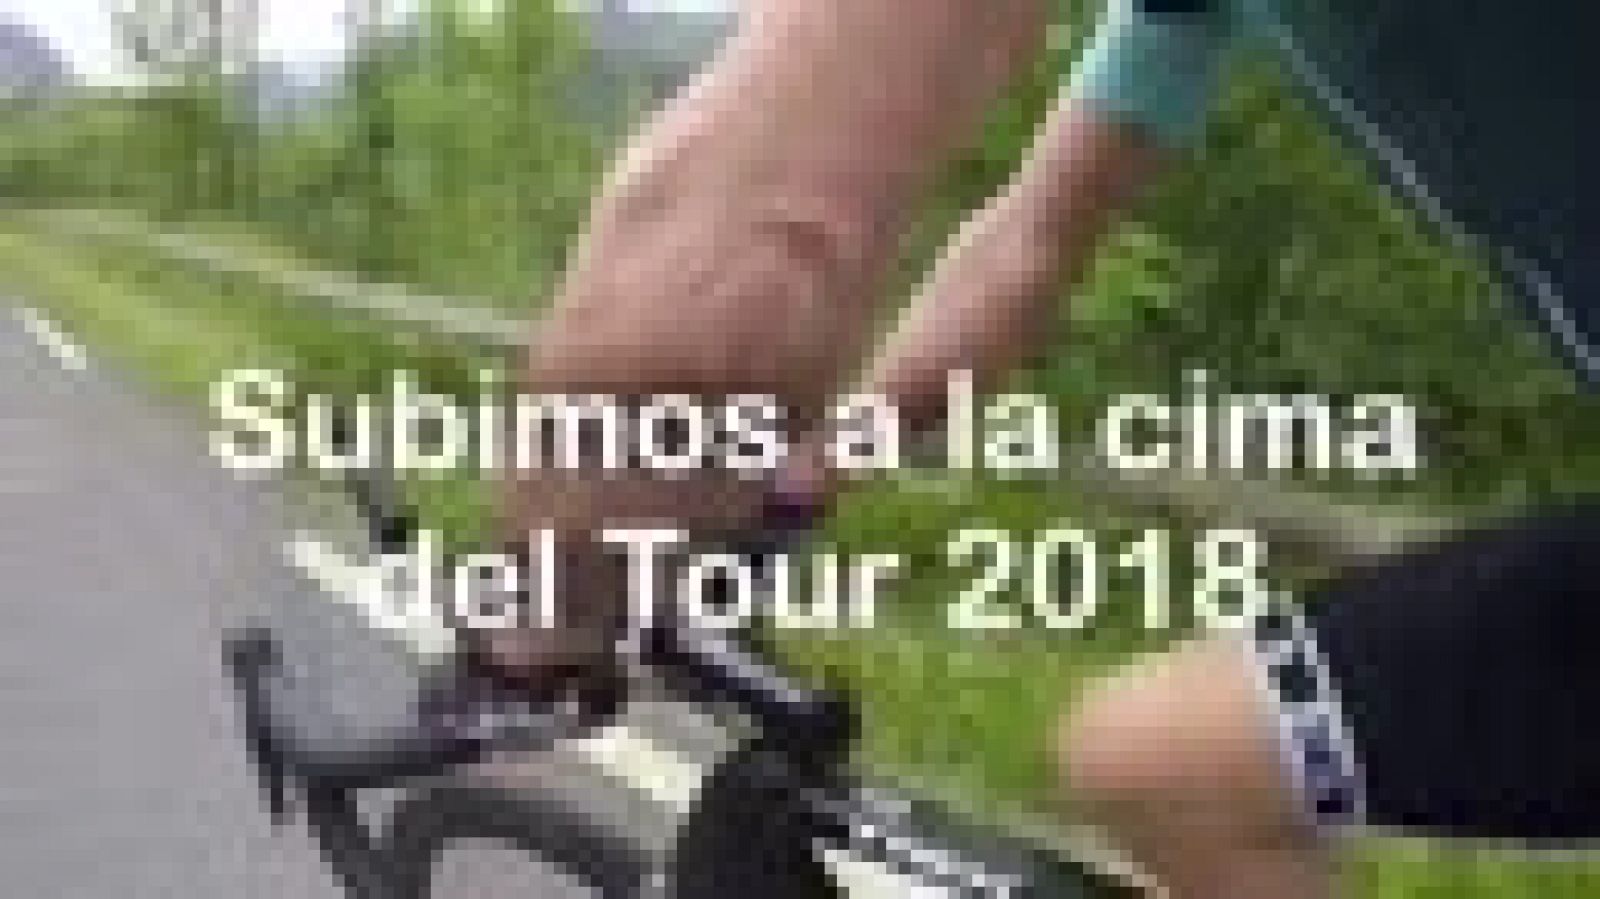 RTVE.es y el exciclista vasco Haimar Zubeldia pedalean juntos el recorrido de la in�dita etapa 17 del Tour de Francia 2018. 65 kil�metros de alta monta�a entre las localidades francesas de Bagn�res de Luchon y Saint Lary-Soulan con el final en la cim